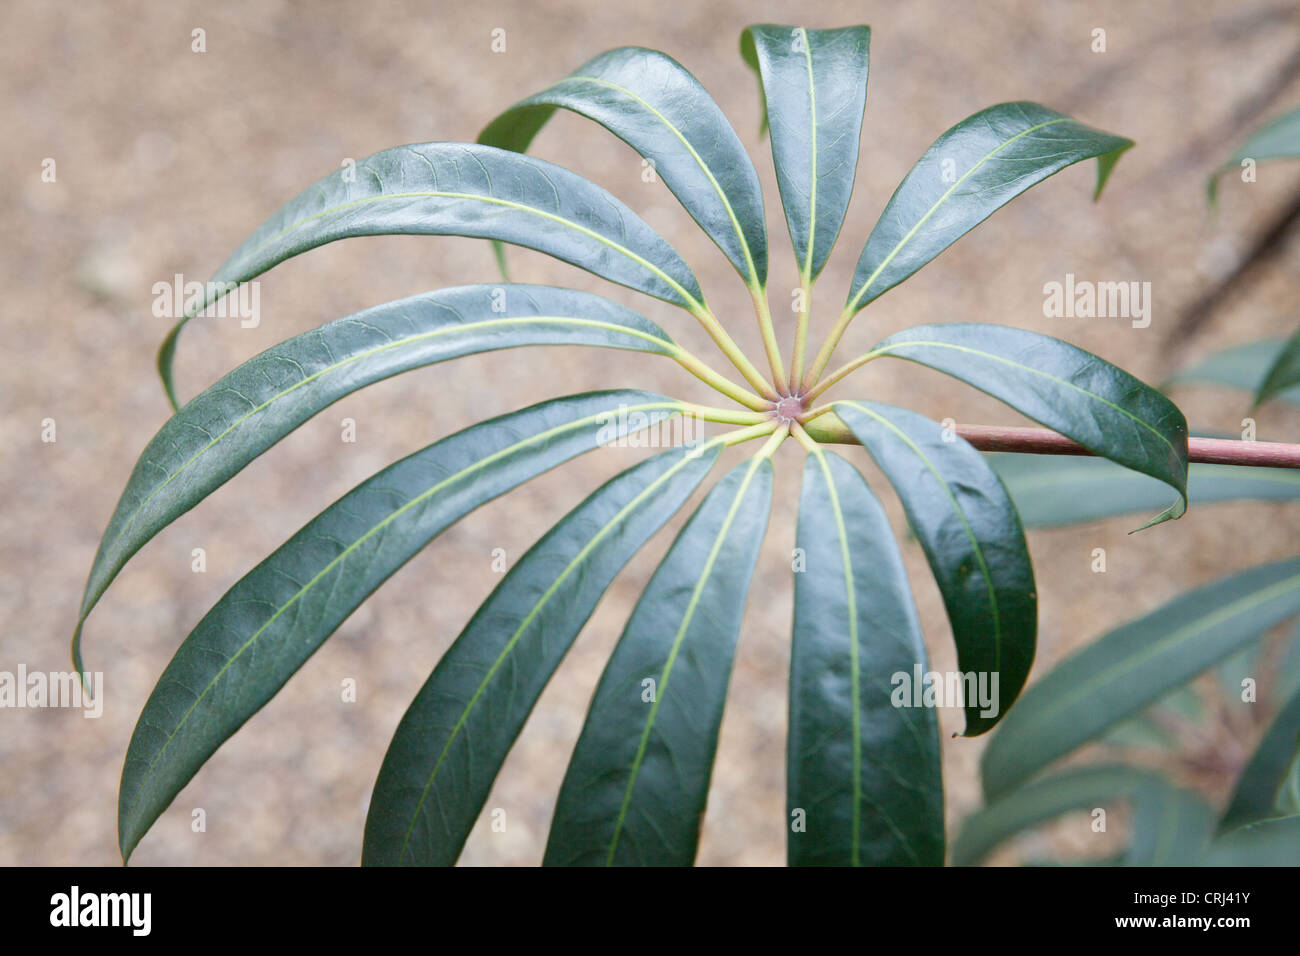 Schefflera taiwaniana leaf detail Stock Photo